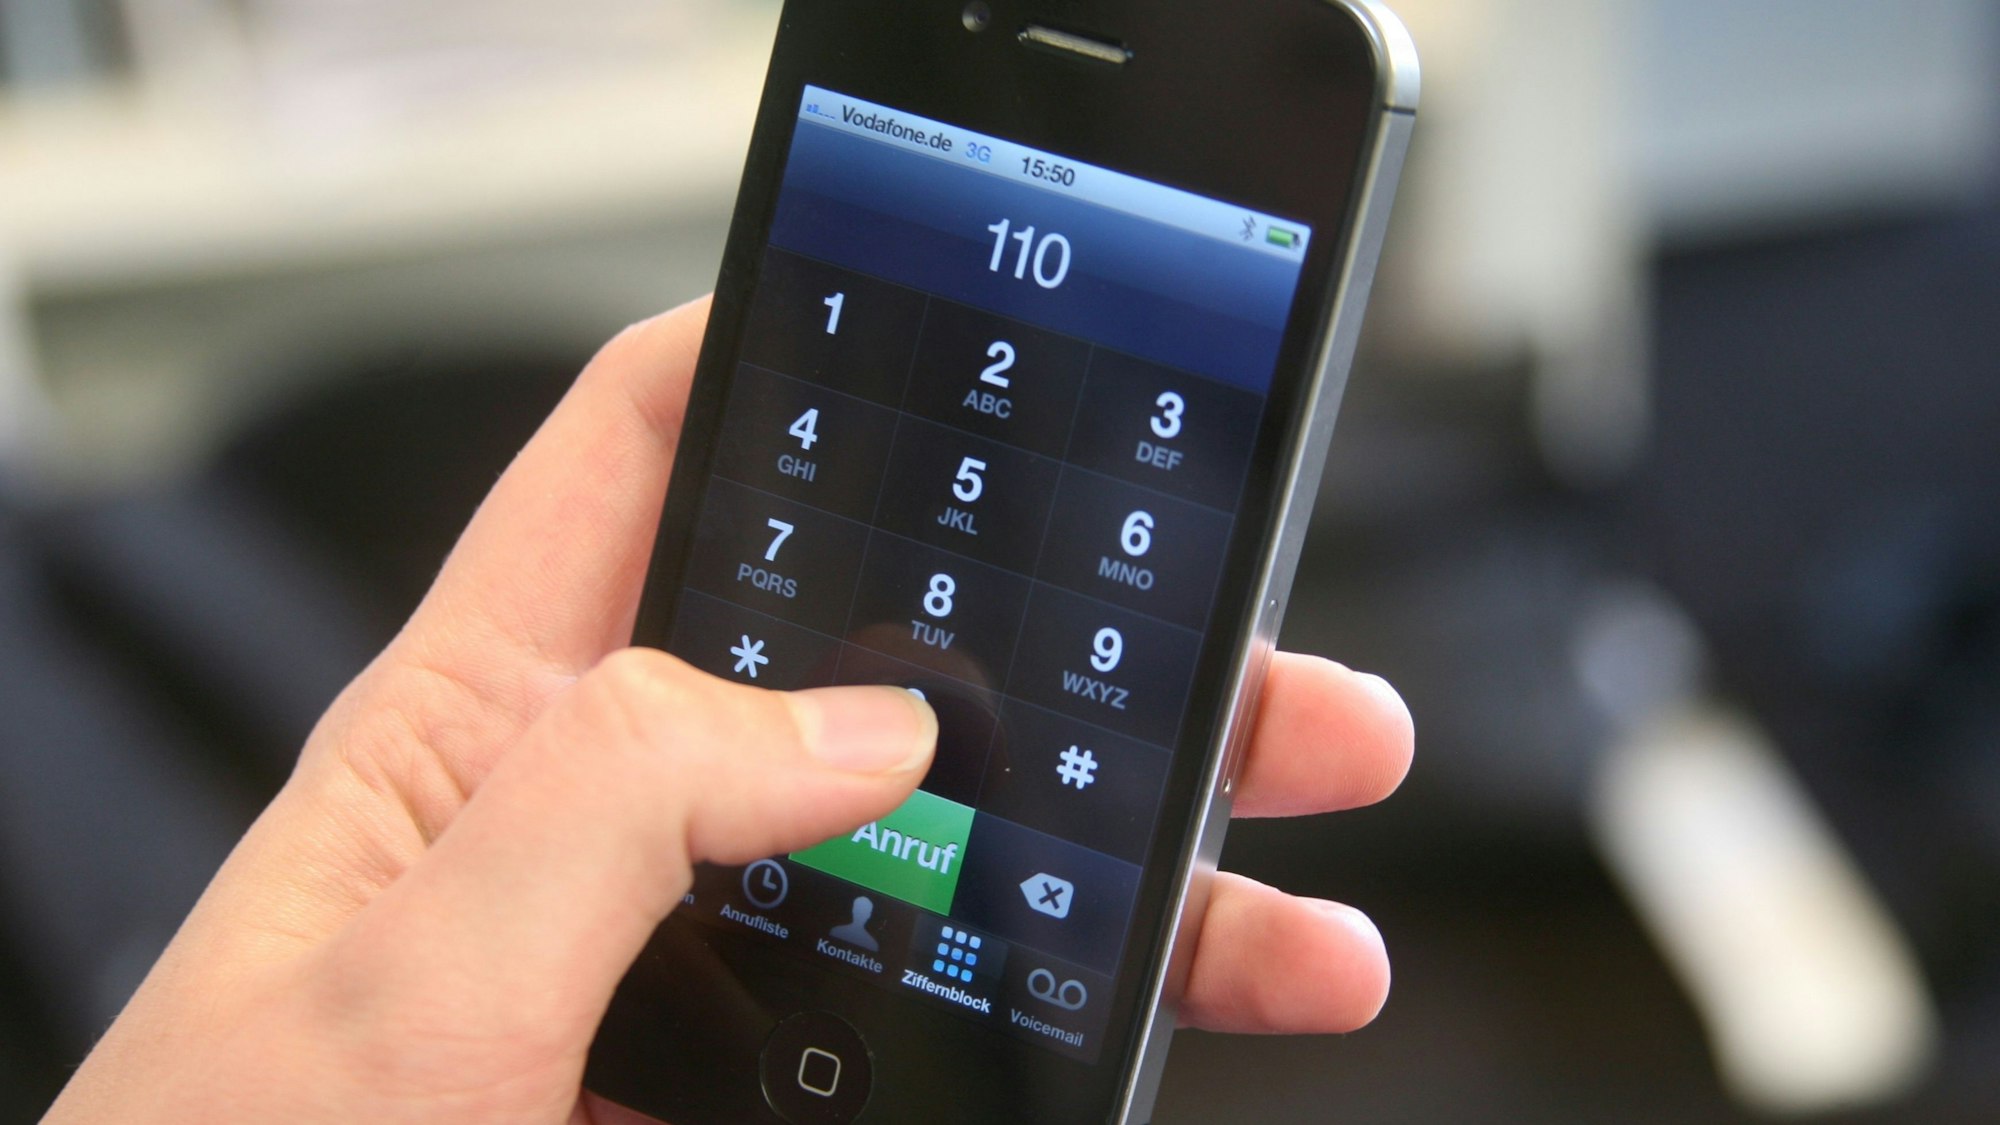 Das Bild zeigt eine Hand, die ein Smartphone festhält und die 110, die Notrufnummer der Polizei, eingetippt hat.